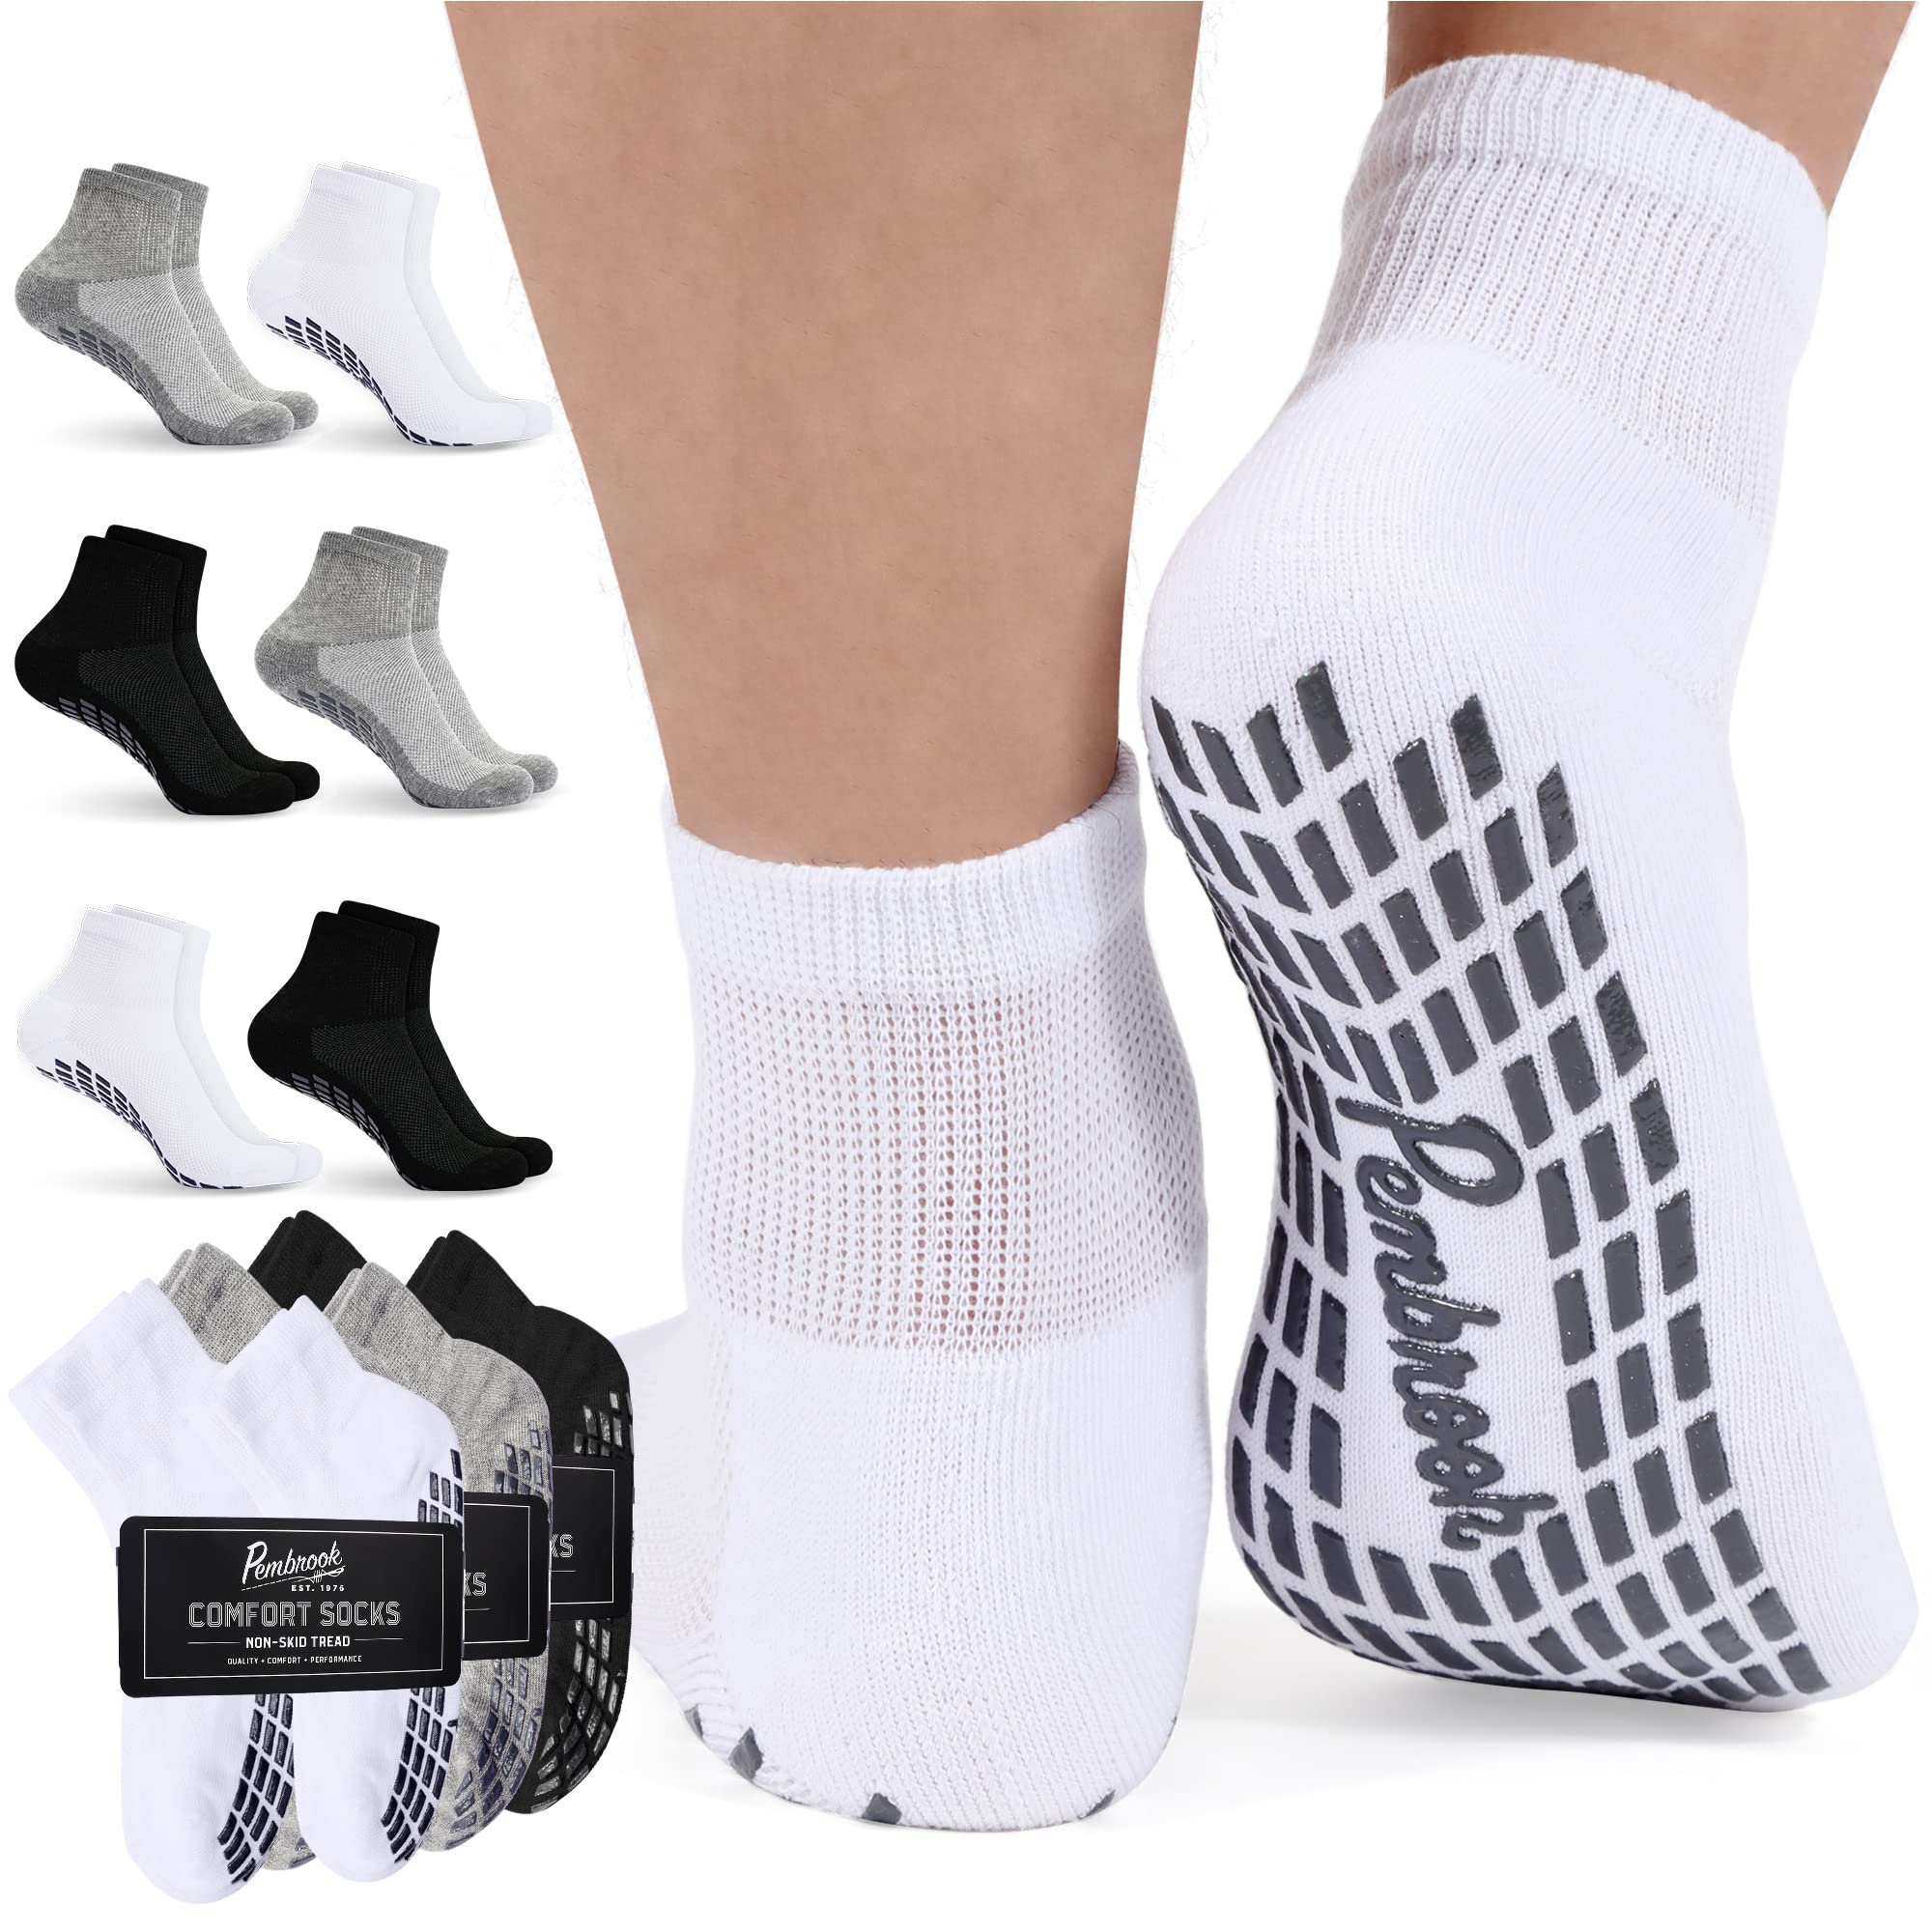 Pembrook Yoga Socks with Grips for Men - 4 Pairs Unisex Non Slip Socks